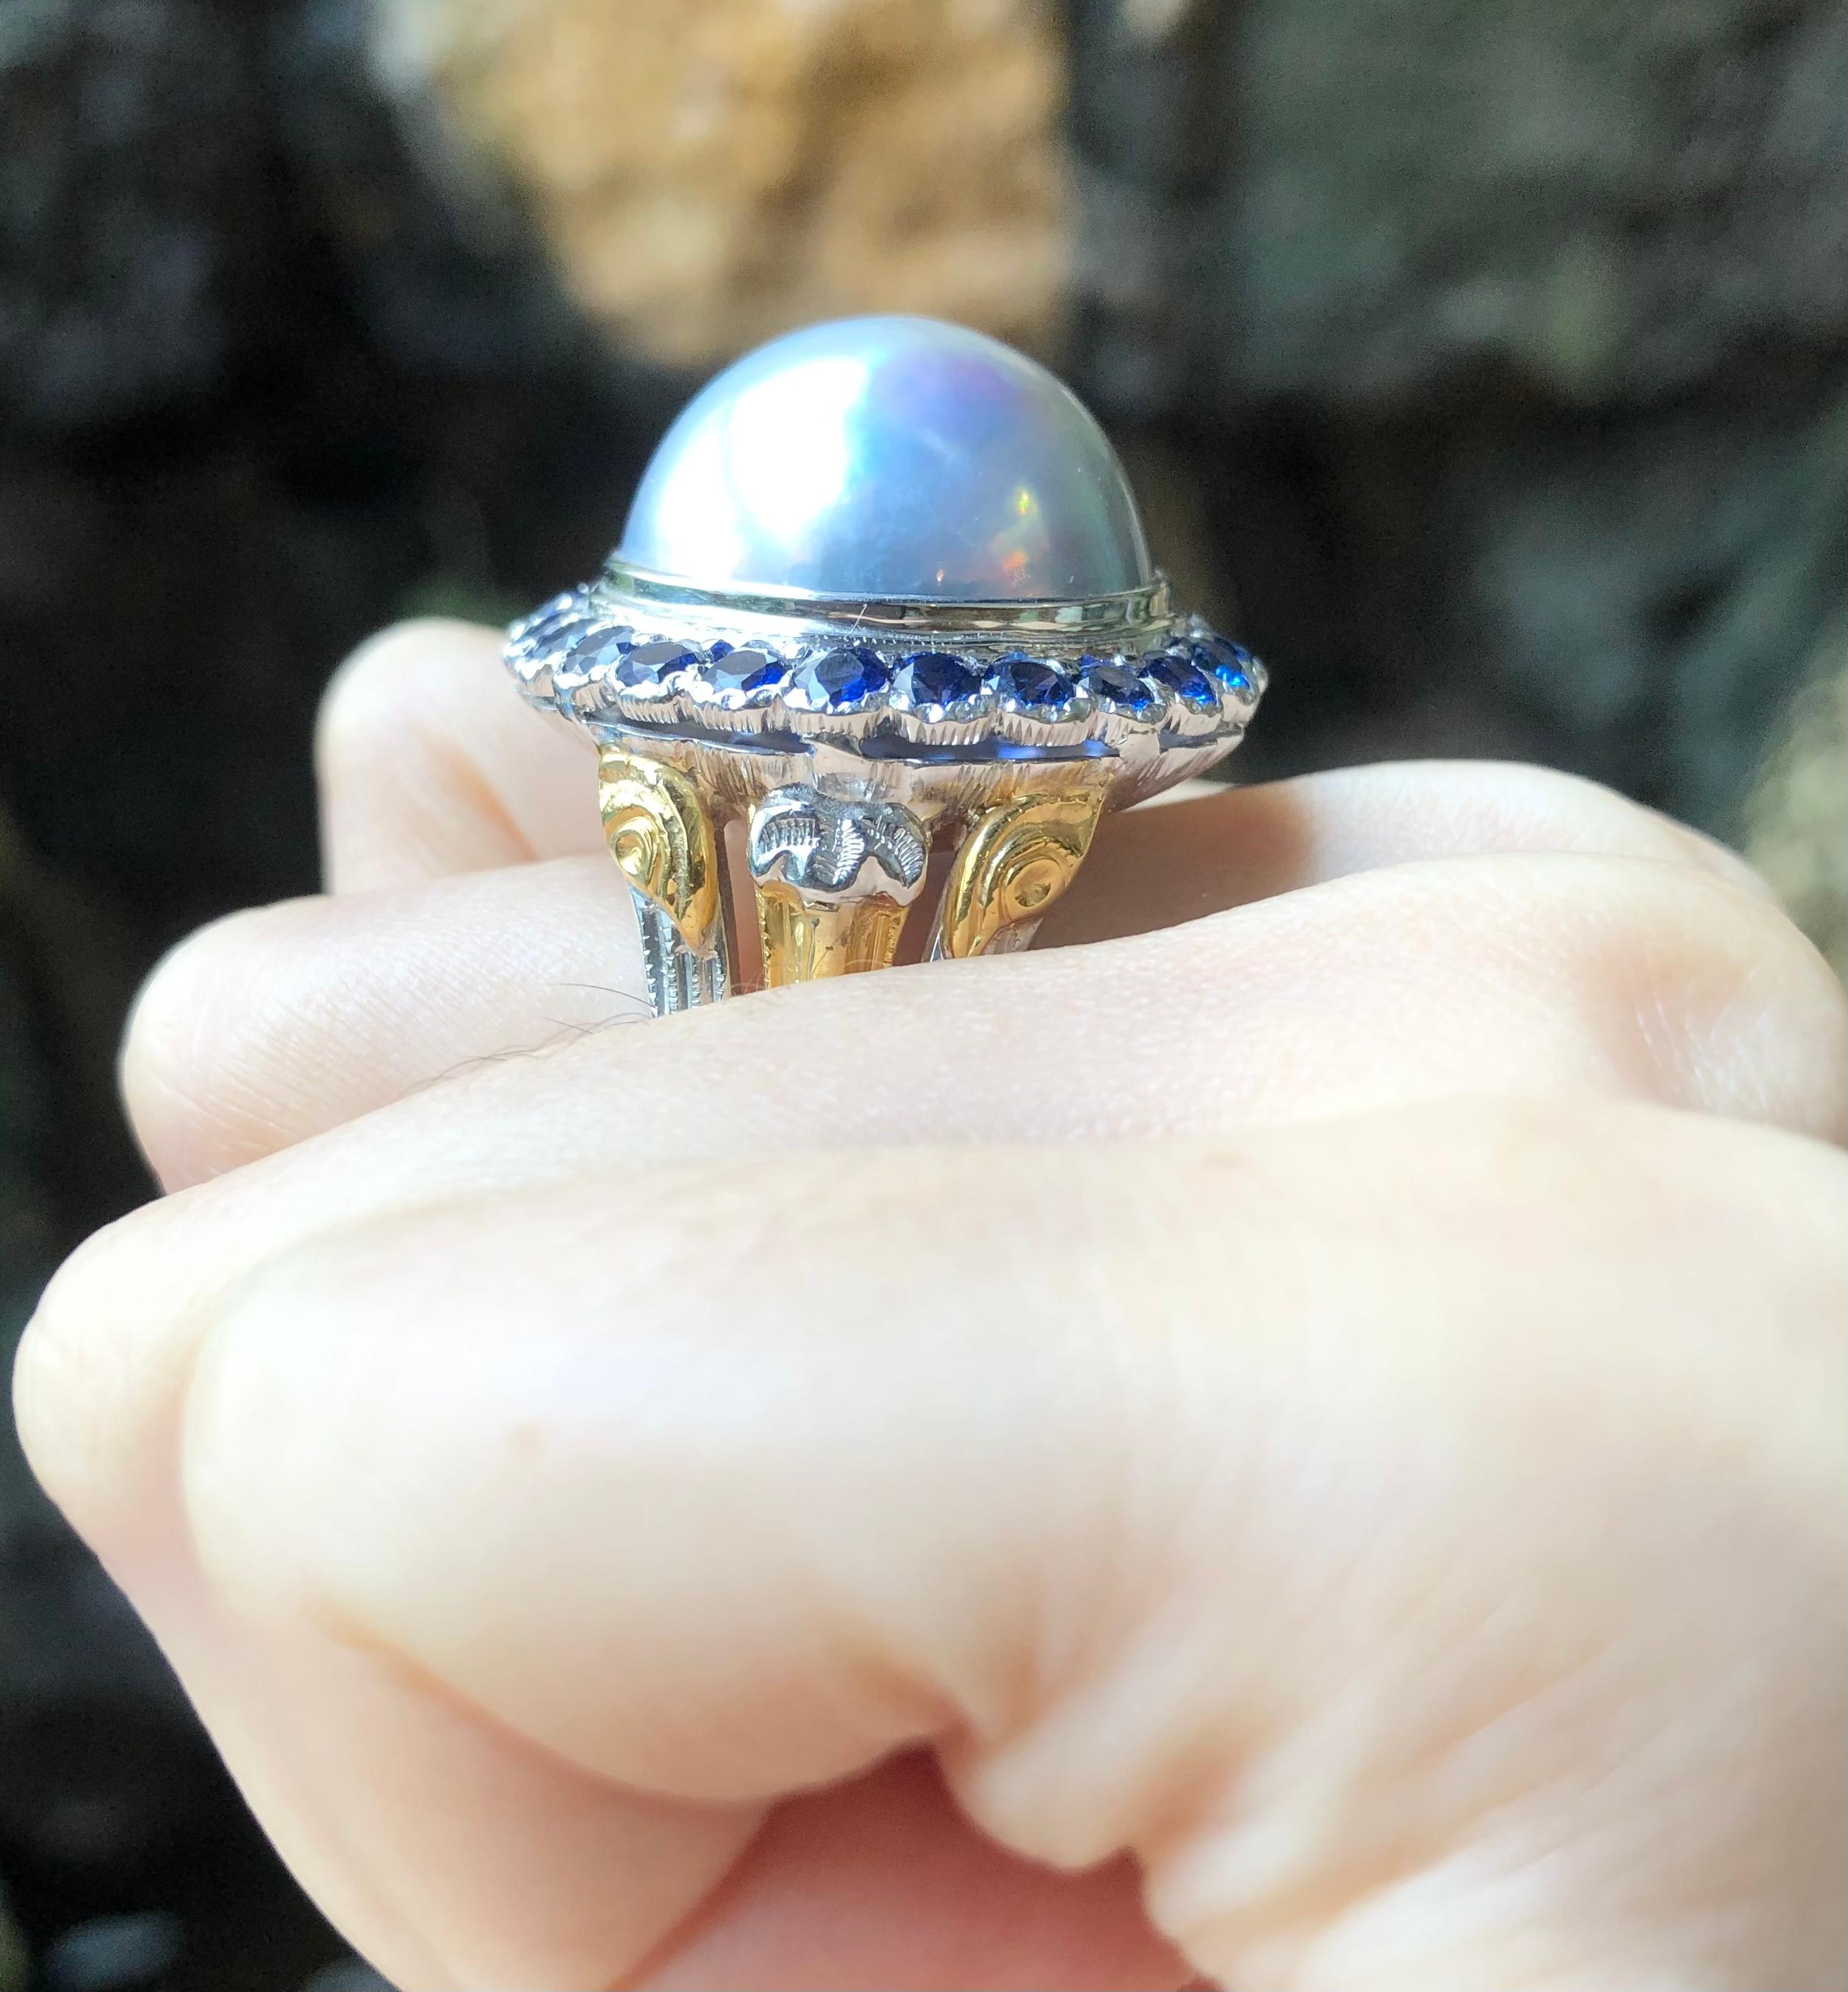 Mabe Perle mit blauem Saphir 3,12 Karat Ring in 18 Karat Weißgold gefasst

Breite:  2.5 cm 
Länge: 2,5 cm
Ringgröße: 68
Gesamtgewicht: 31,8 Gramm

